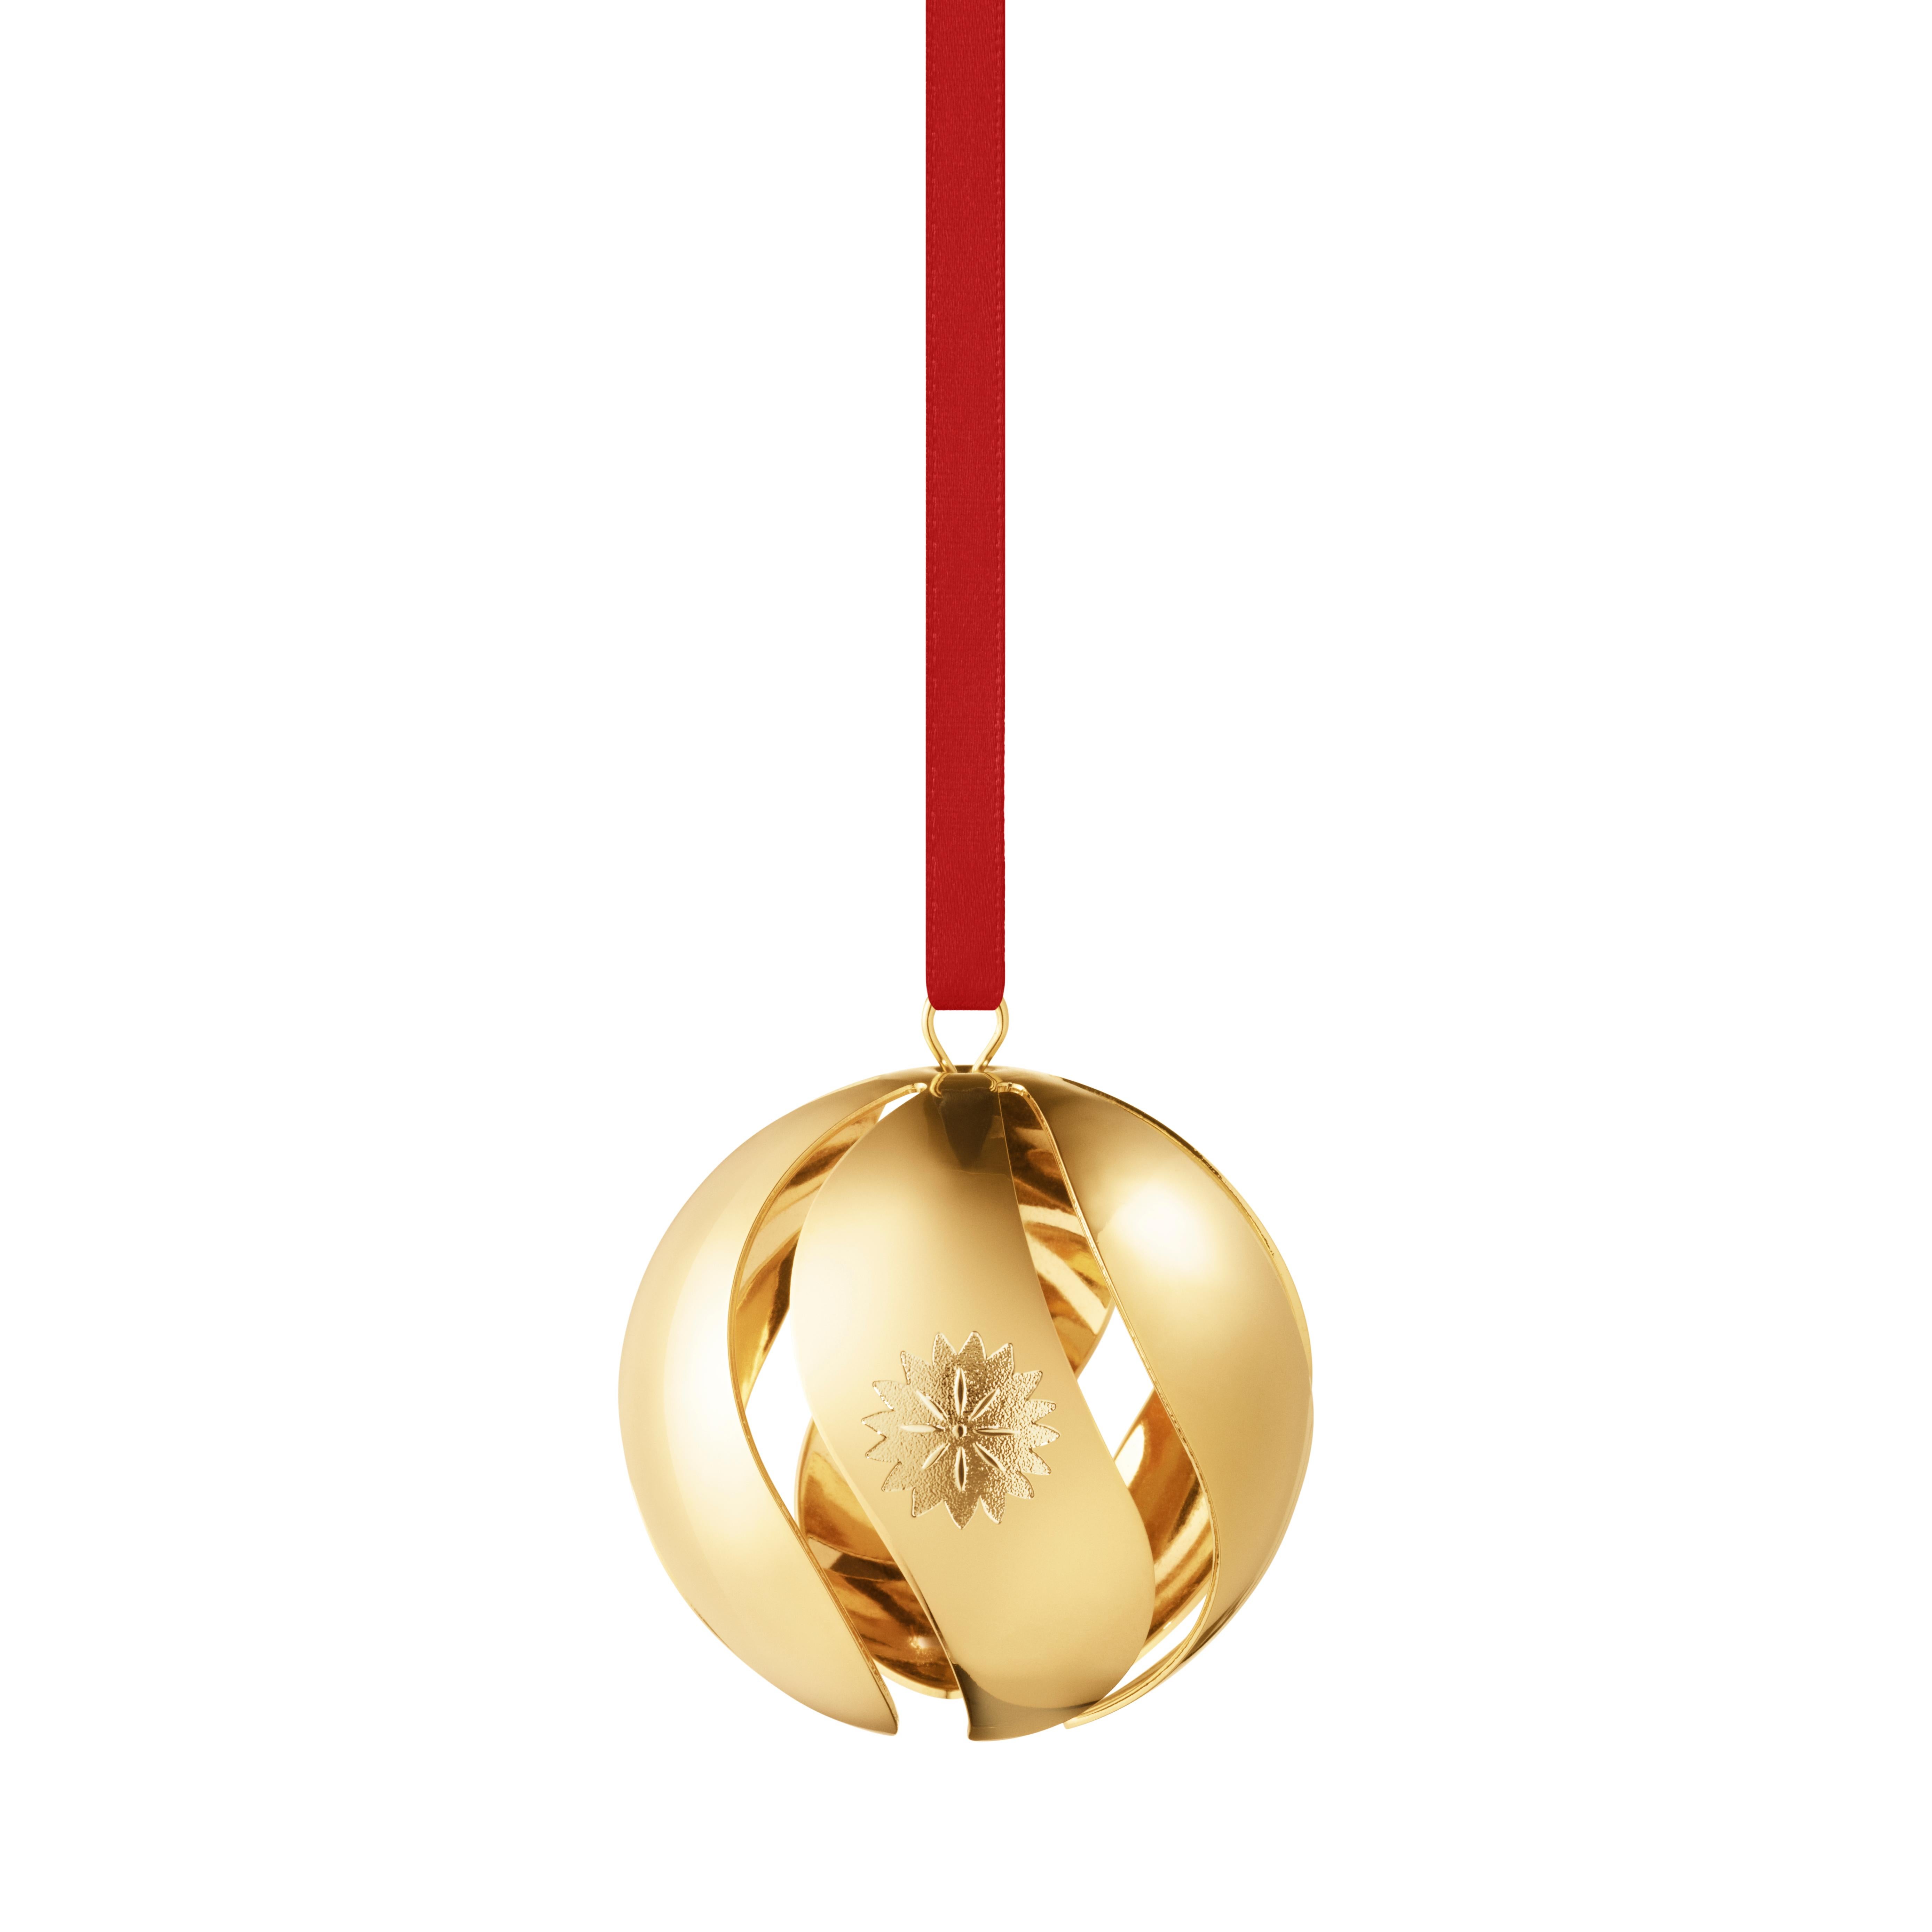 2020 Christmas Ball, 18 kt gold plated brass
 